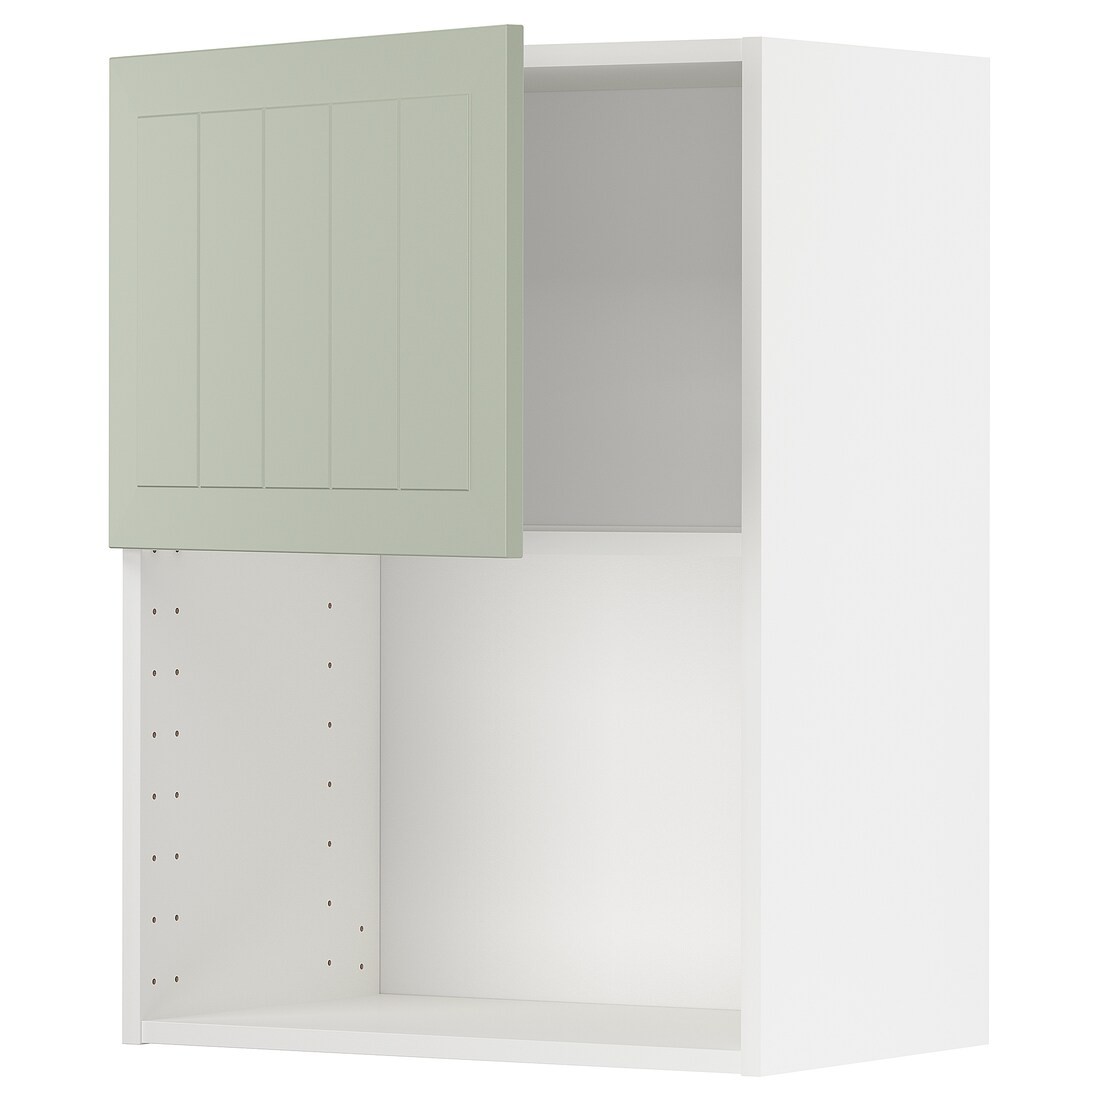 IKEA METOD МЕТОД Навісна шафа для НВЧ-печі, білий / Stensund світло-зелений, 60x80 см 49486670 494.866.70